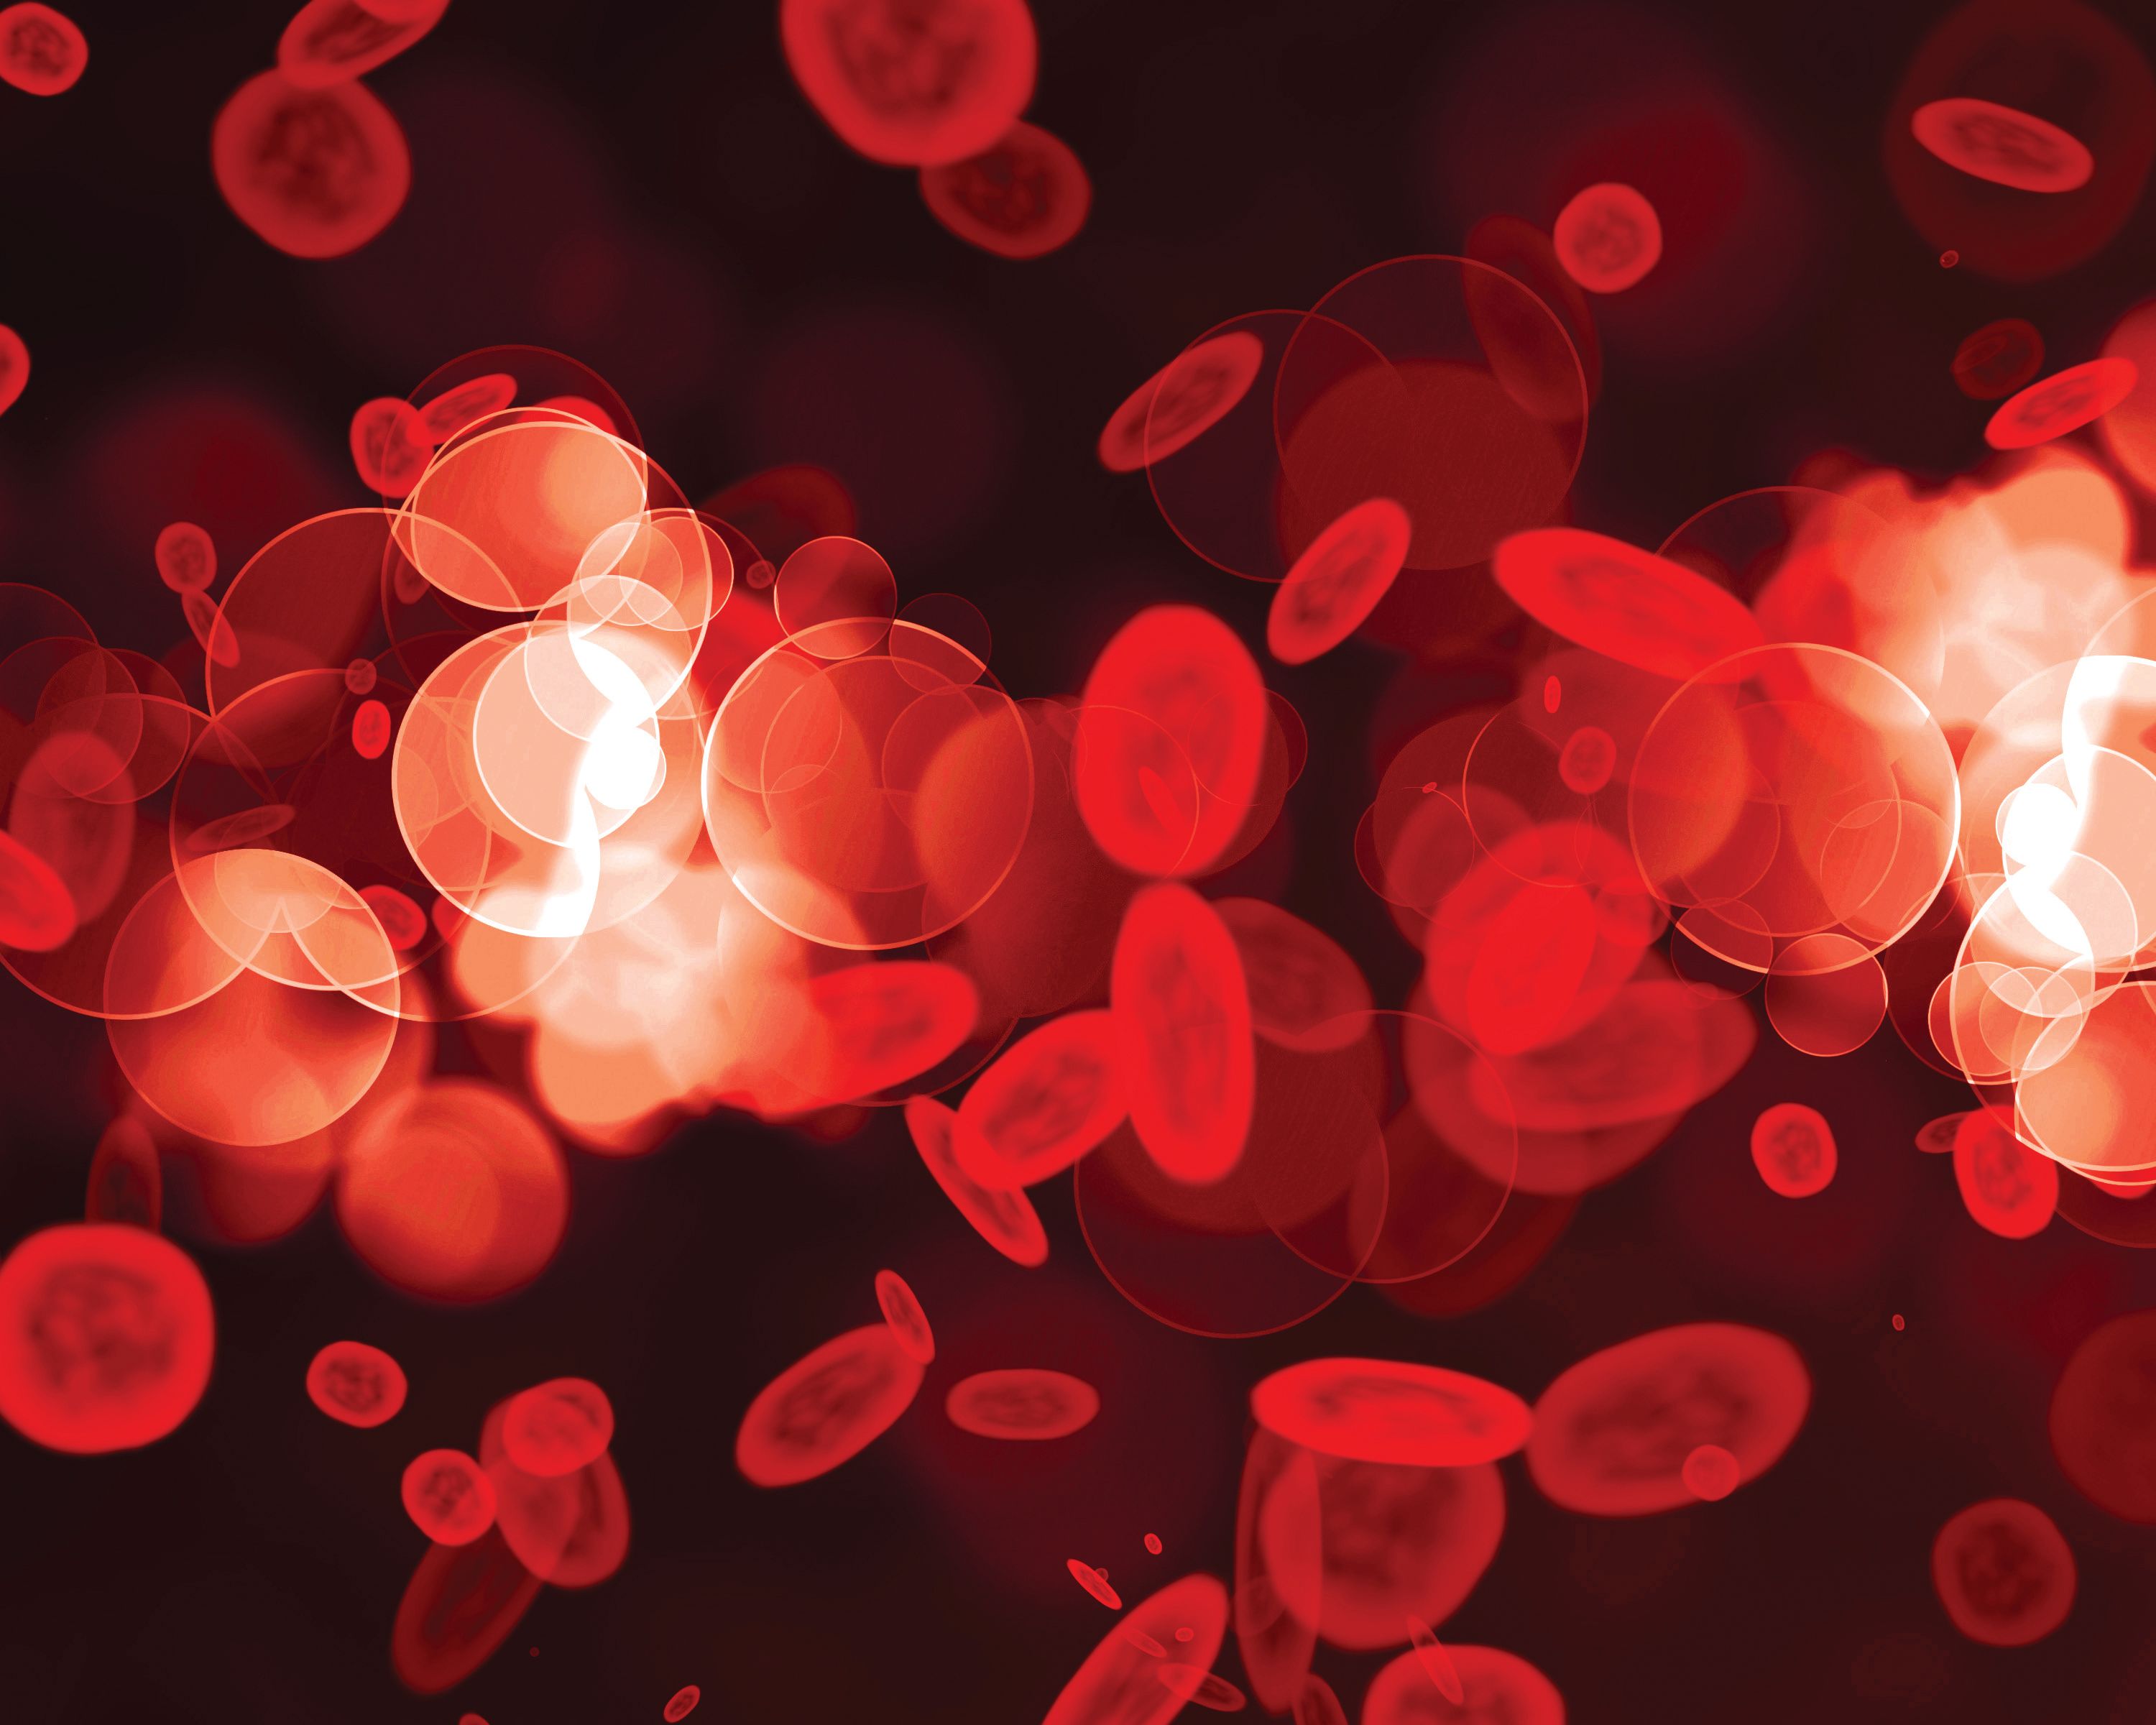 Ropeginterferon Alfa-2b は真性赤血球増加症の日本人患者において有効性と安全性を証明